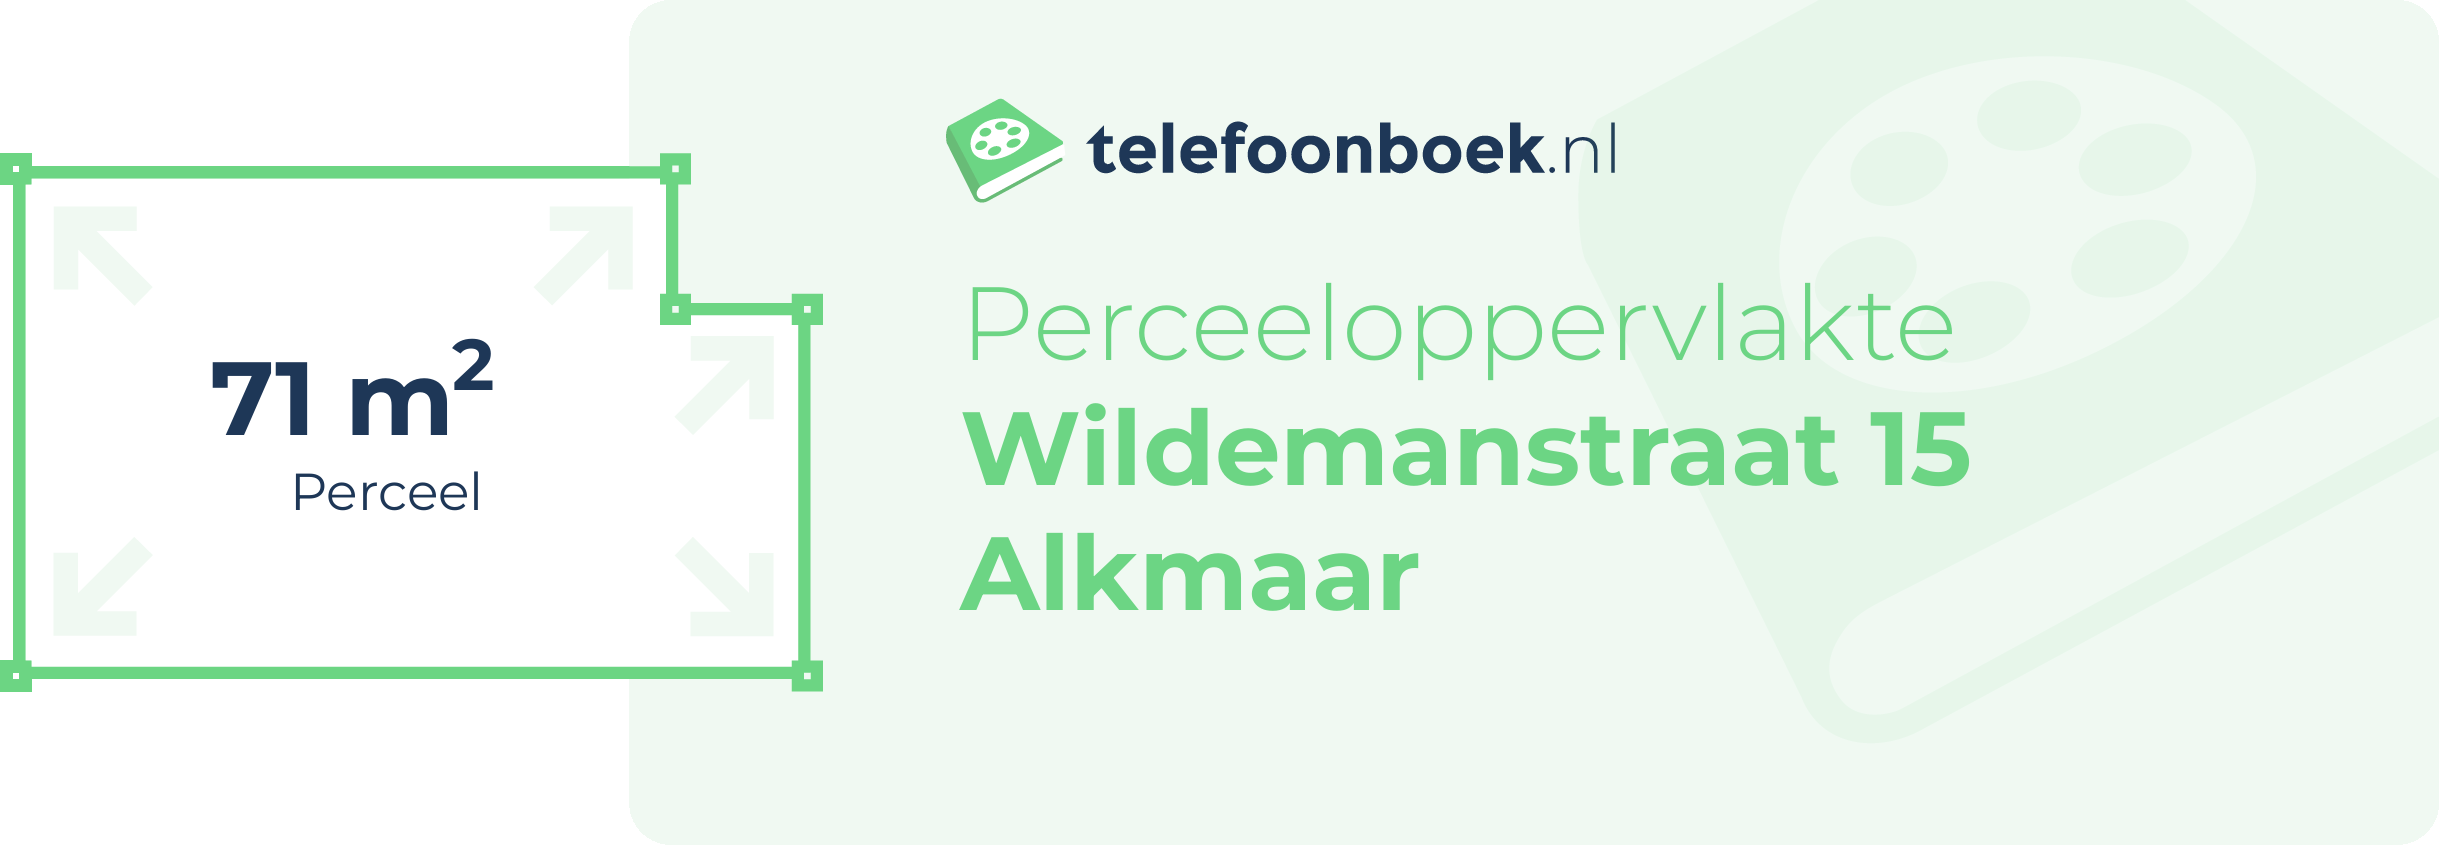 Perceeloppervlakte Wildemanstraat 15 Alkmaar